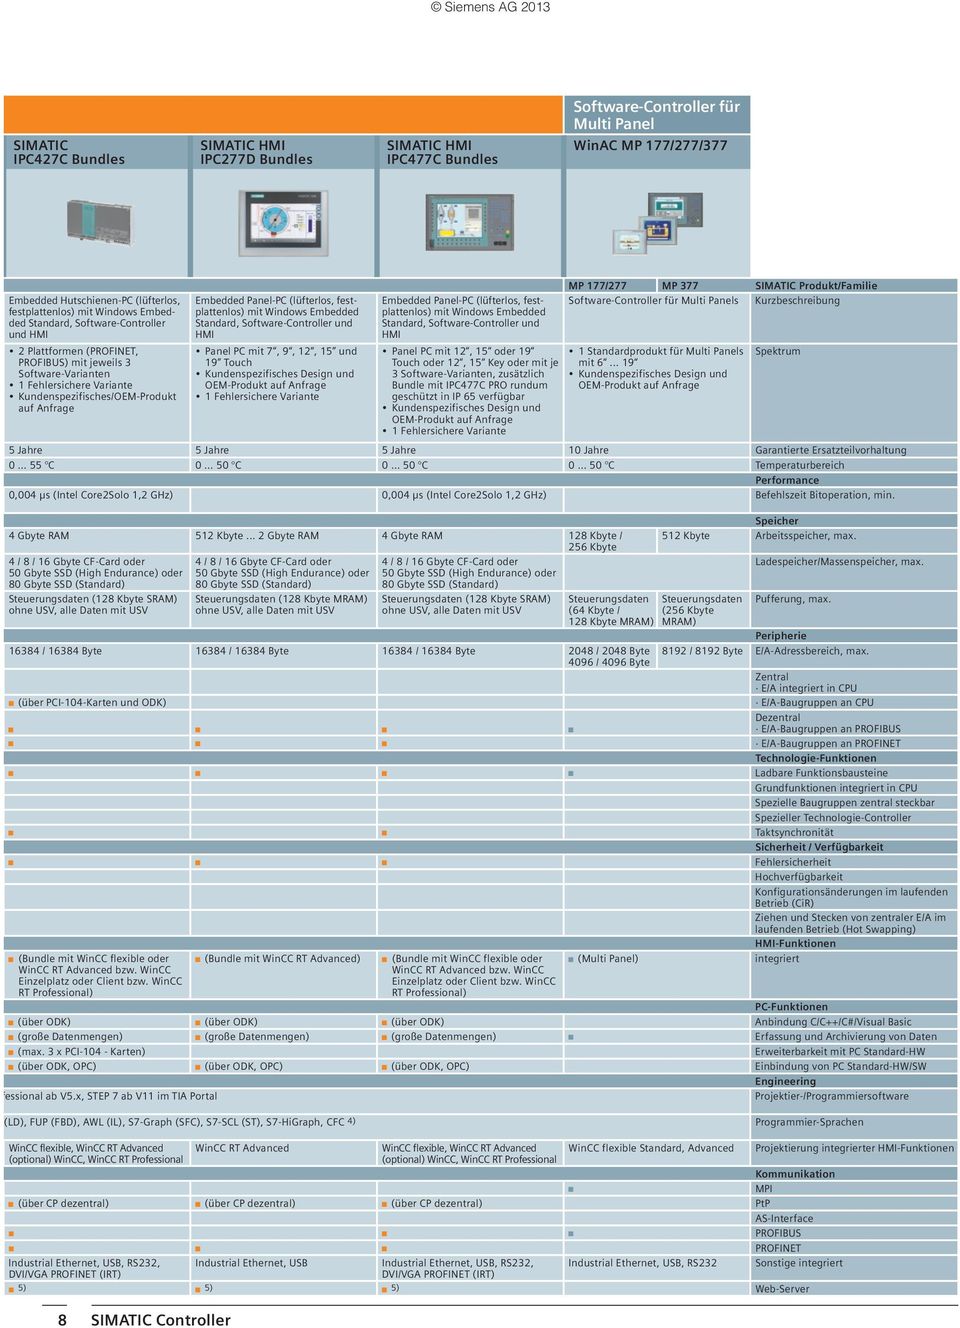 Panel-PC (lüfterlos, festplattenlos) mit Windows Embedded Standard, Software-Controller und HMI Panel PC mit 7, 9, 12, 15 und 19 Touch Kundenspezifisches Design und OEM-Produkt auf Anfrage 1